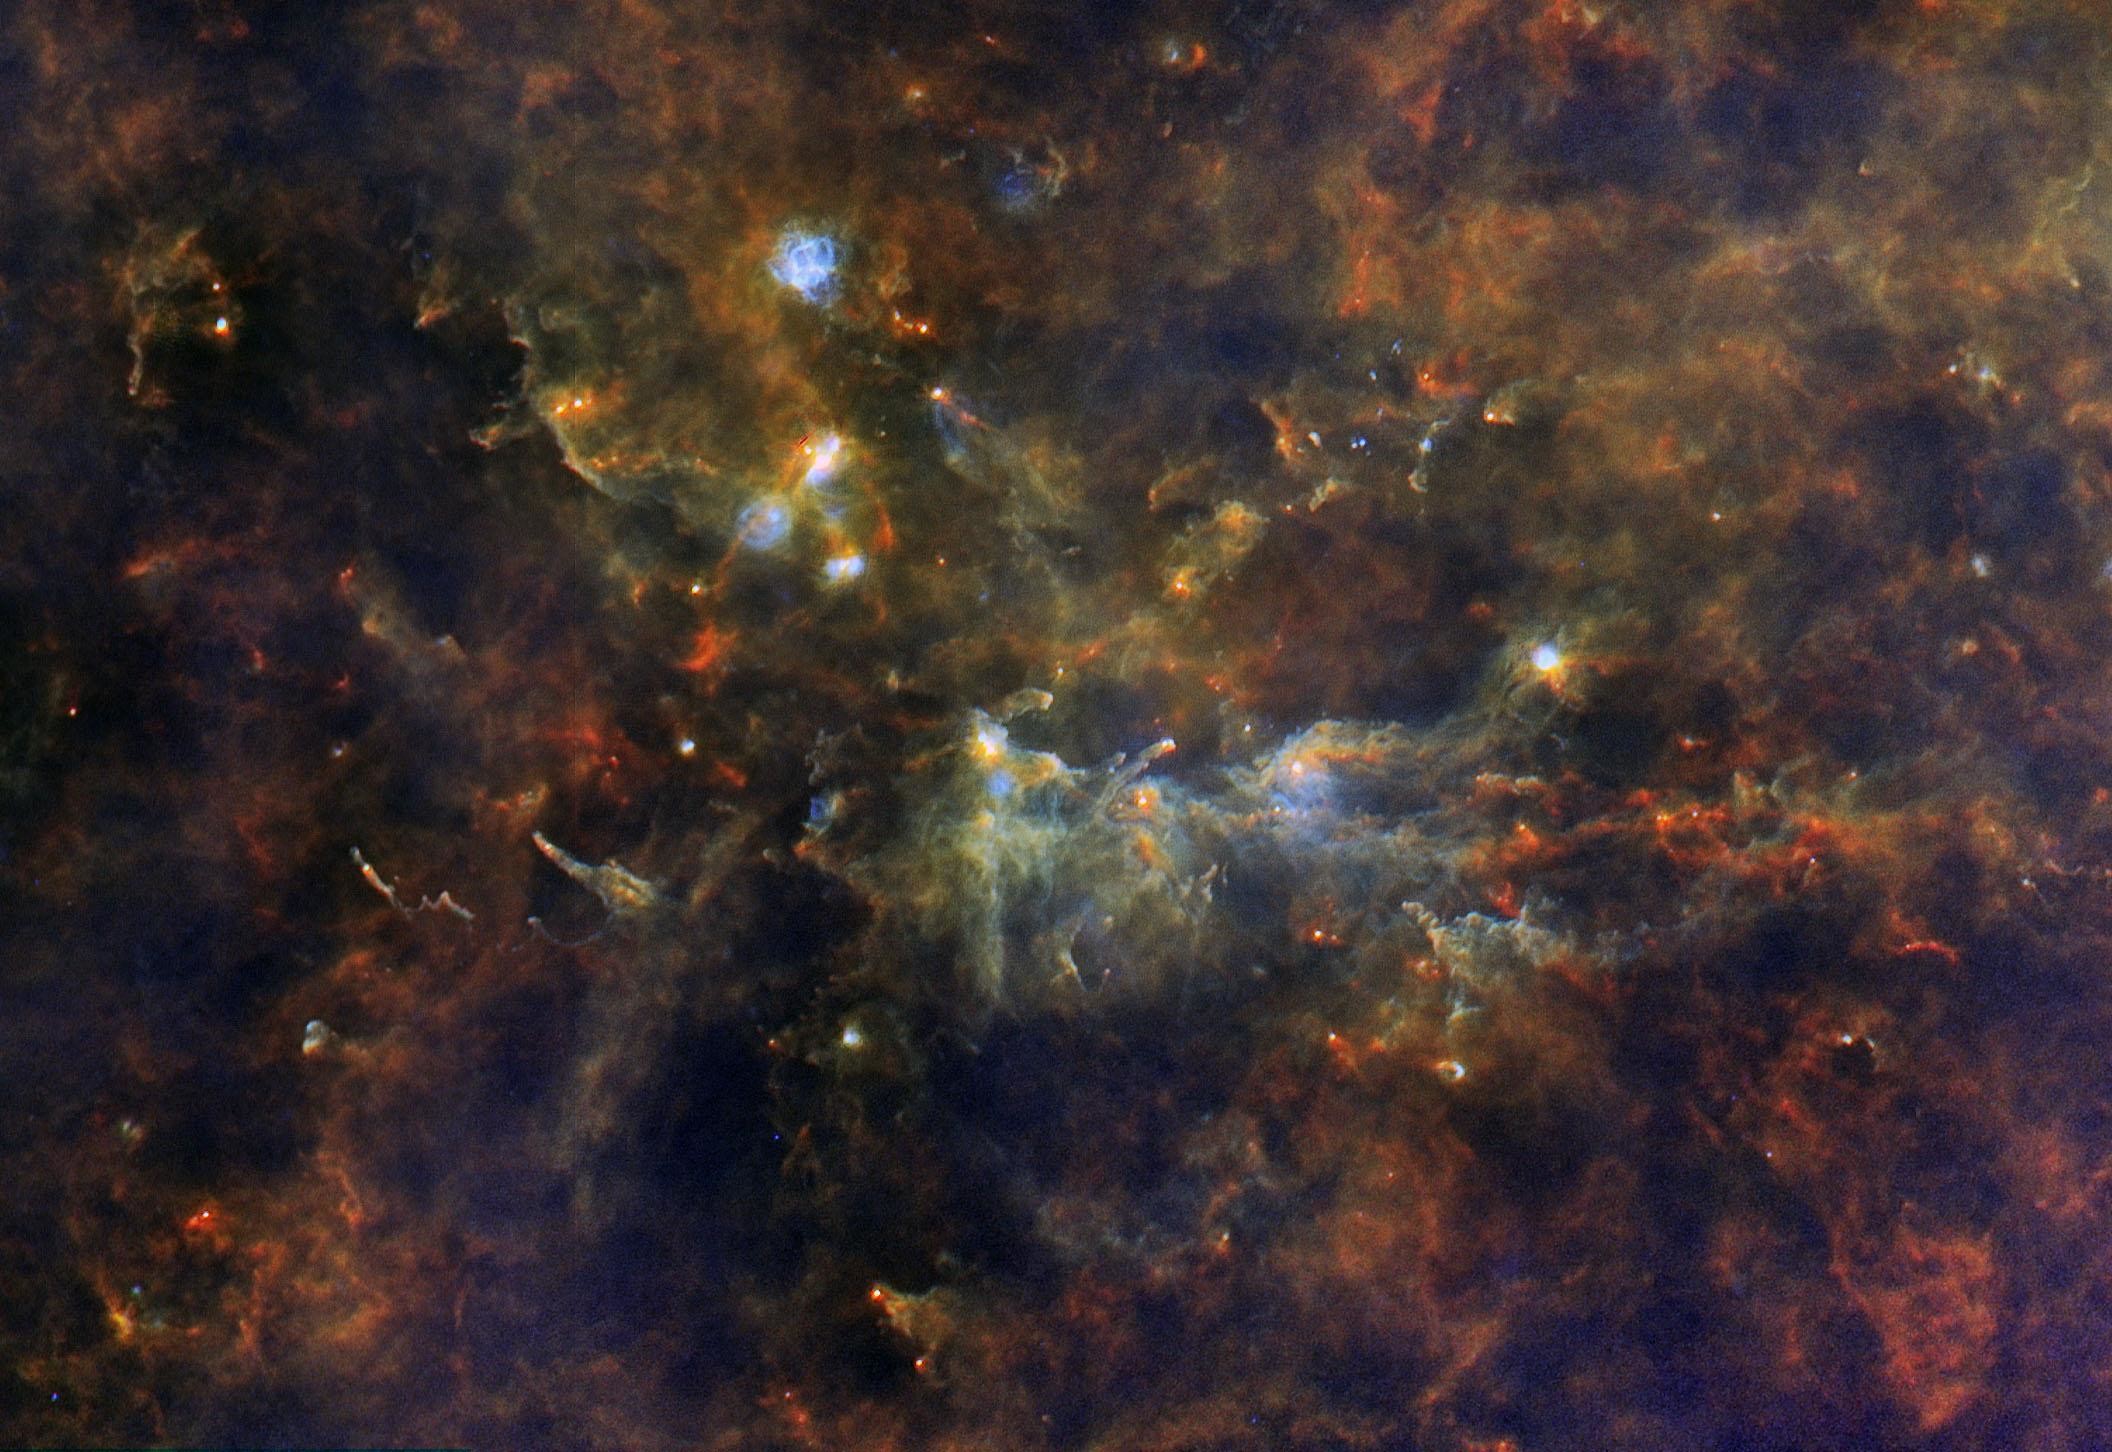 7. Объект на снимке называется Лисичка OB1, расположен в 8000 световых лет от Земли в созвездии Лисичка